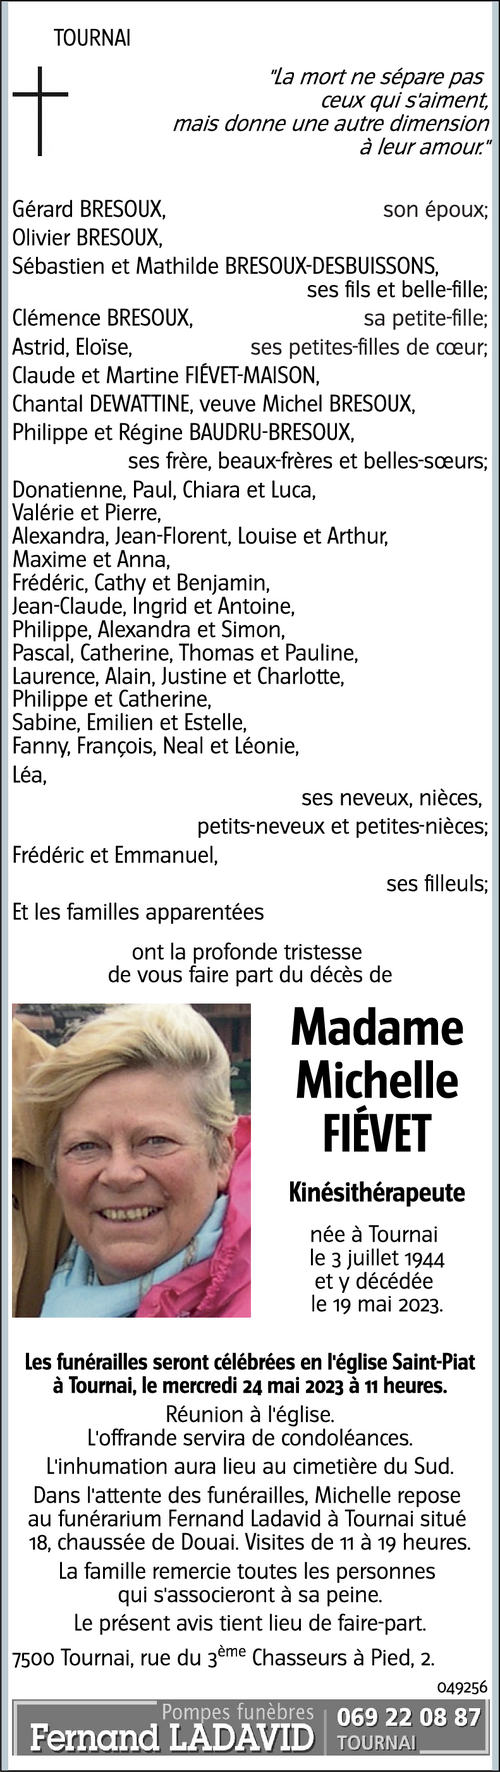 Michelle FIÉVET